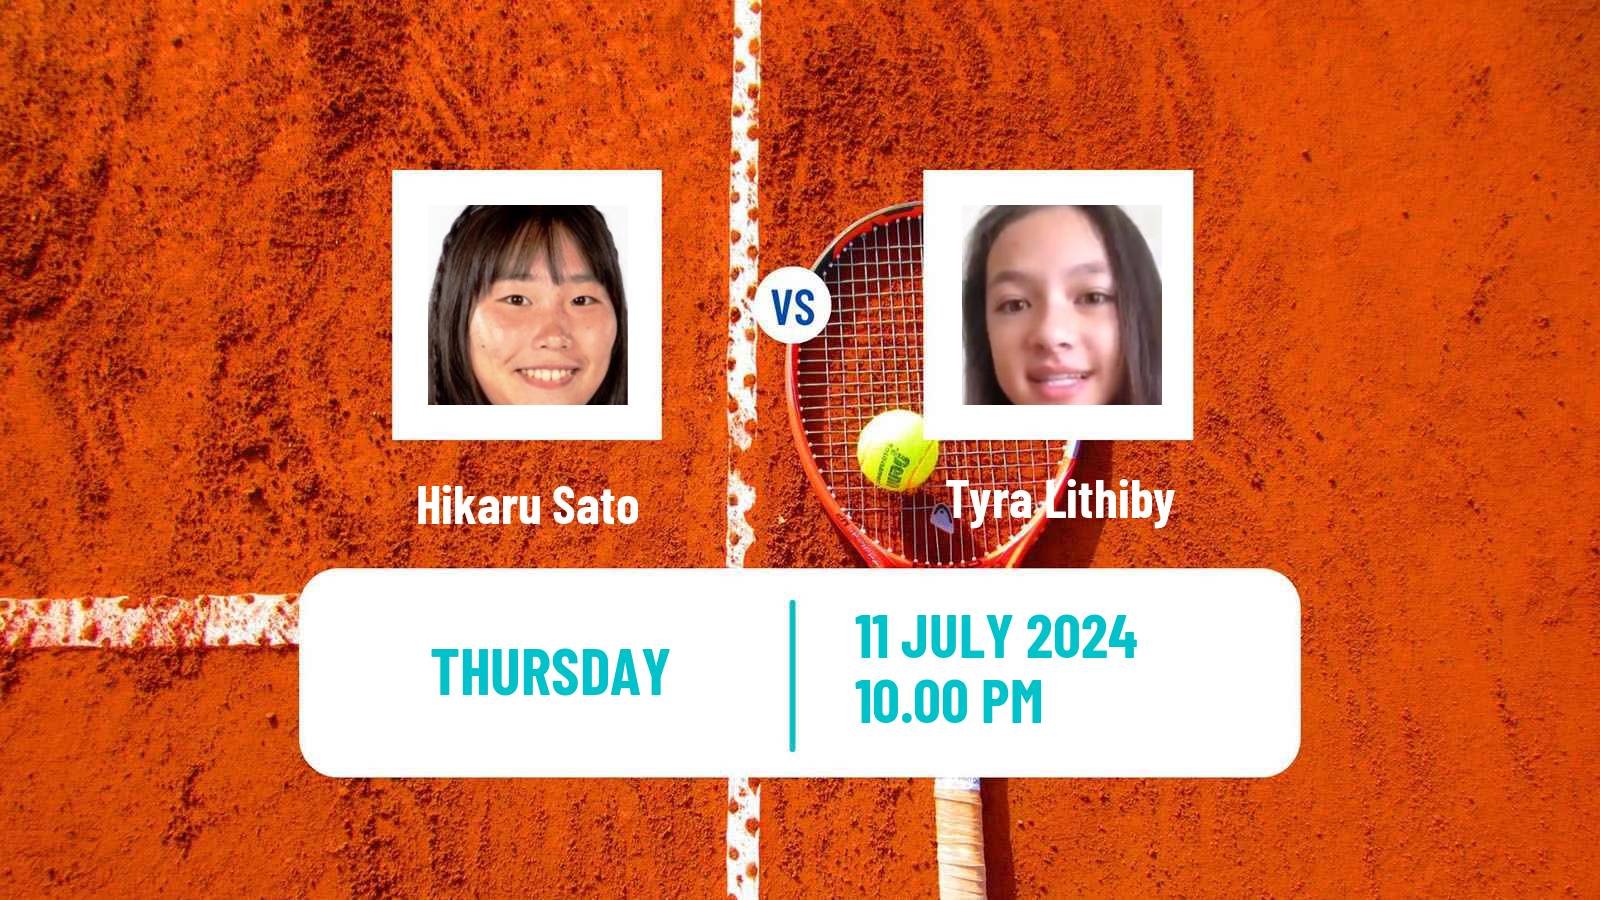 Tennis ITF W15 Nakhon Si Thammarat 3 Women Hikaru Sato - Tyra Lithiby